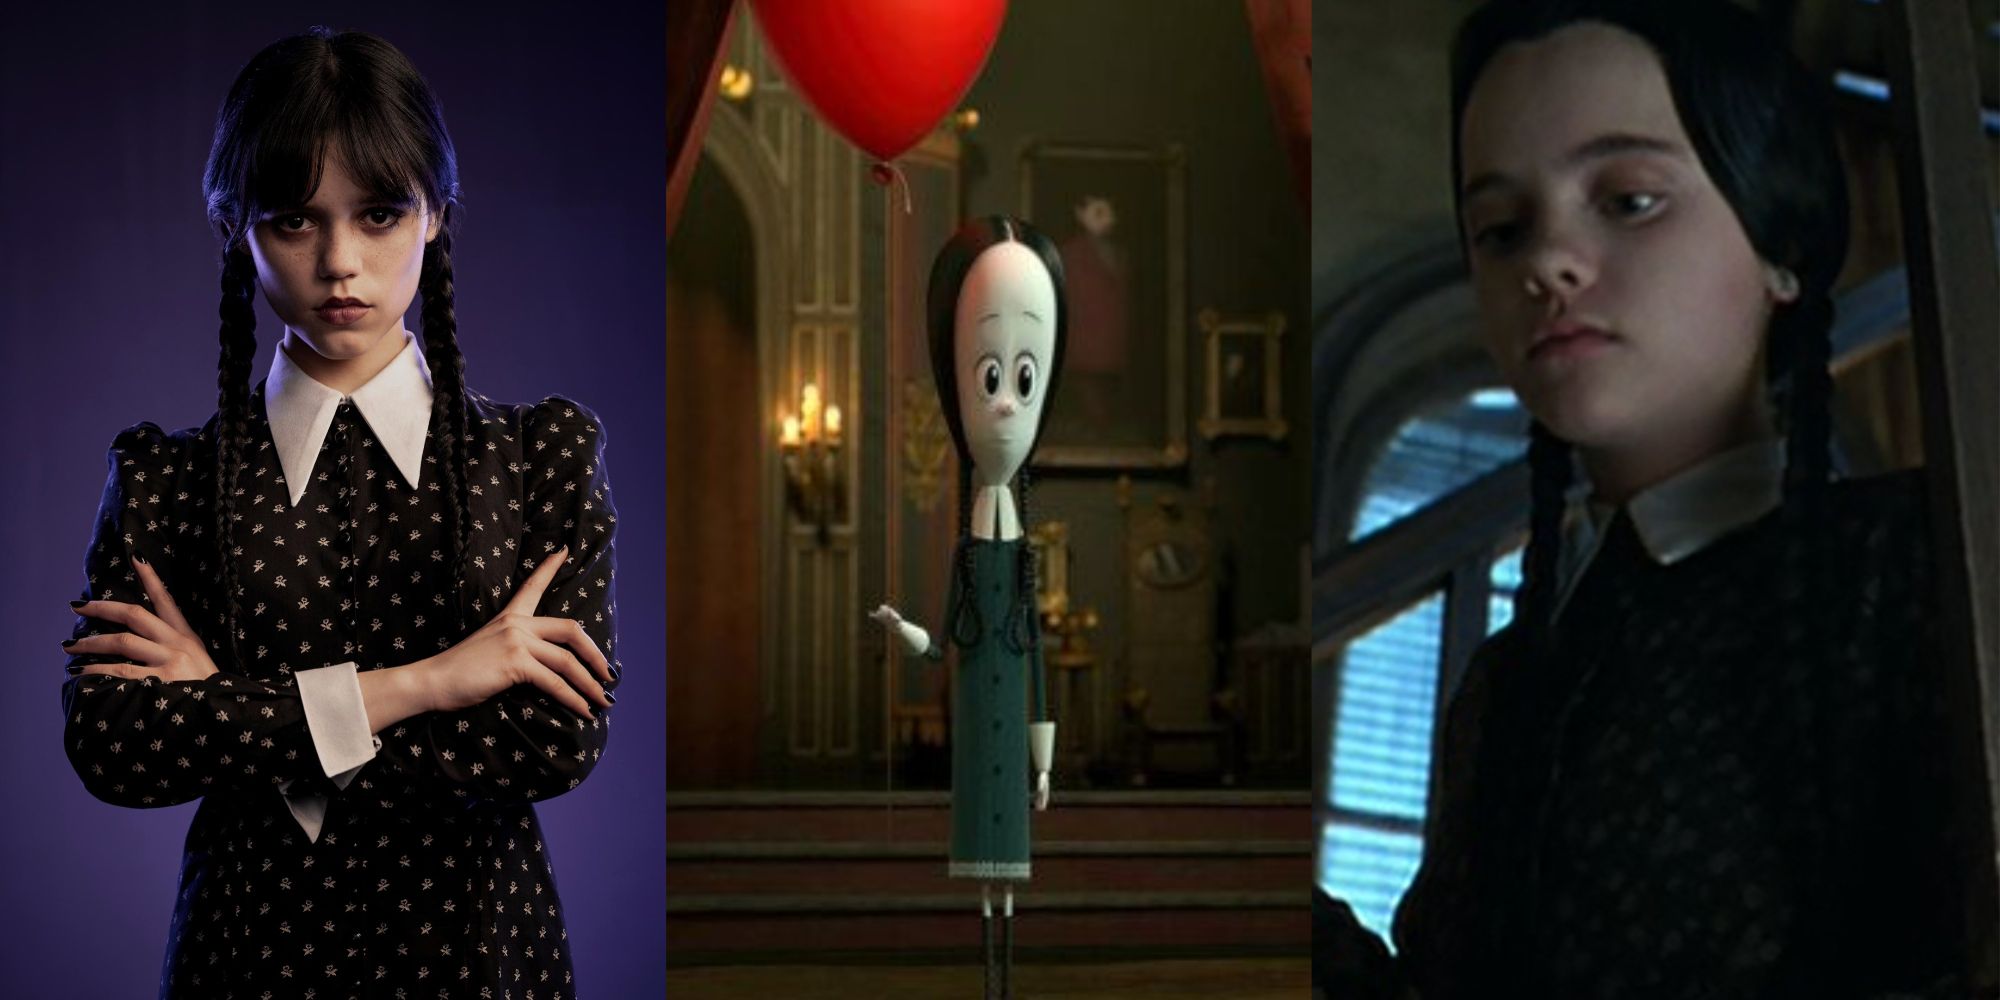 Split Image of Netflix's Wednesday, animated Wednesday and Wednesday Addams from the films